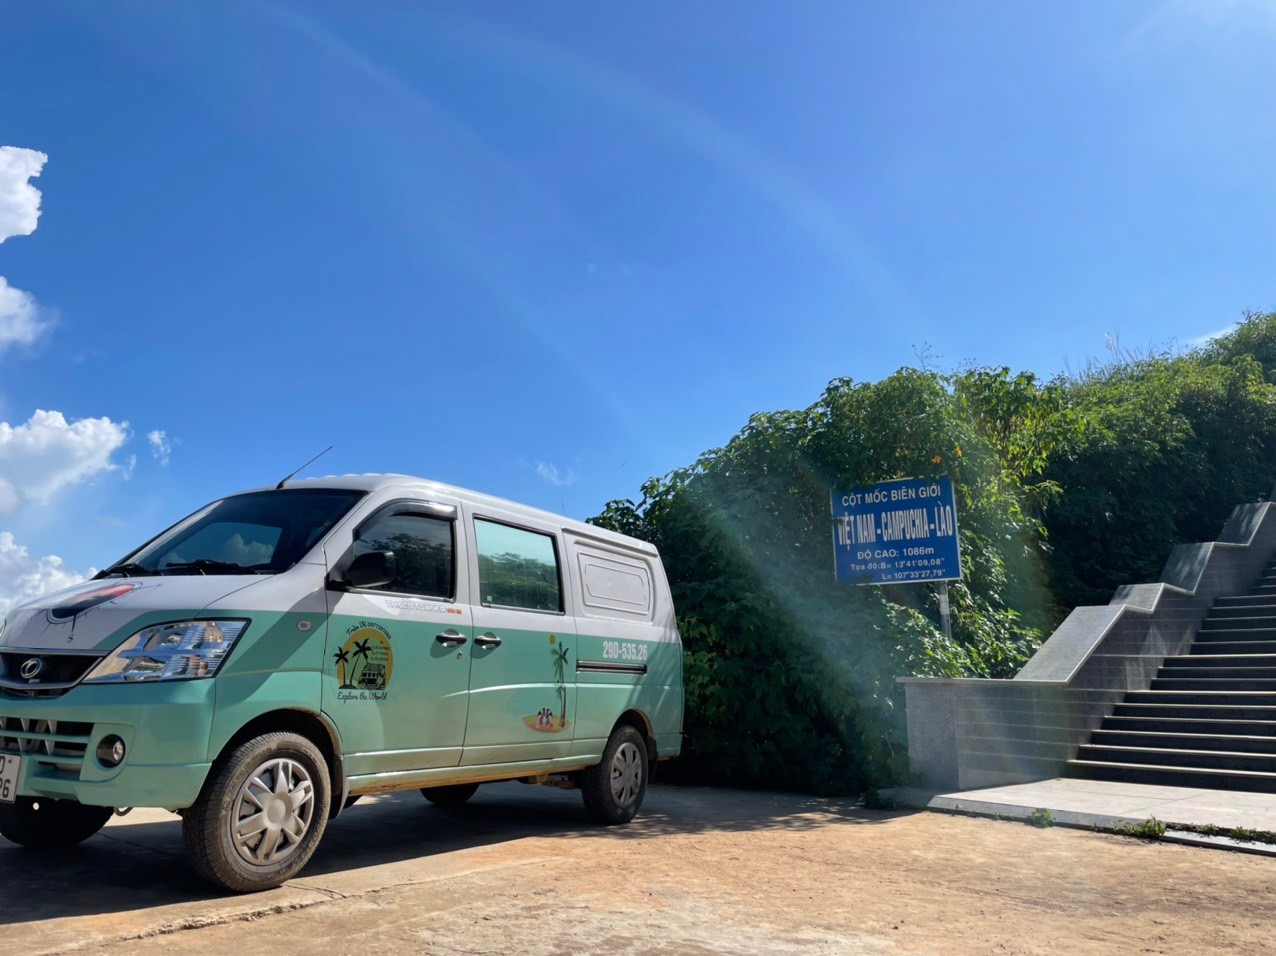 Bán Triton mua xe van THACO hơn 300 triệu độ camping chạy Bắc Nam hơn 18.000km, chủ xe trải lòng: 'Vui, tiện nhưng đi xa hơi cực' - Ảnh 7.